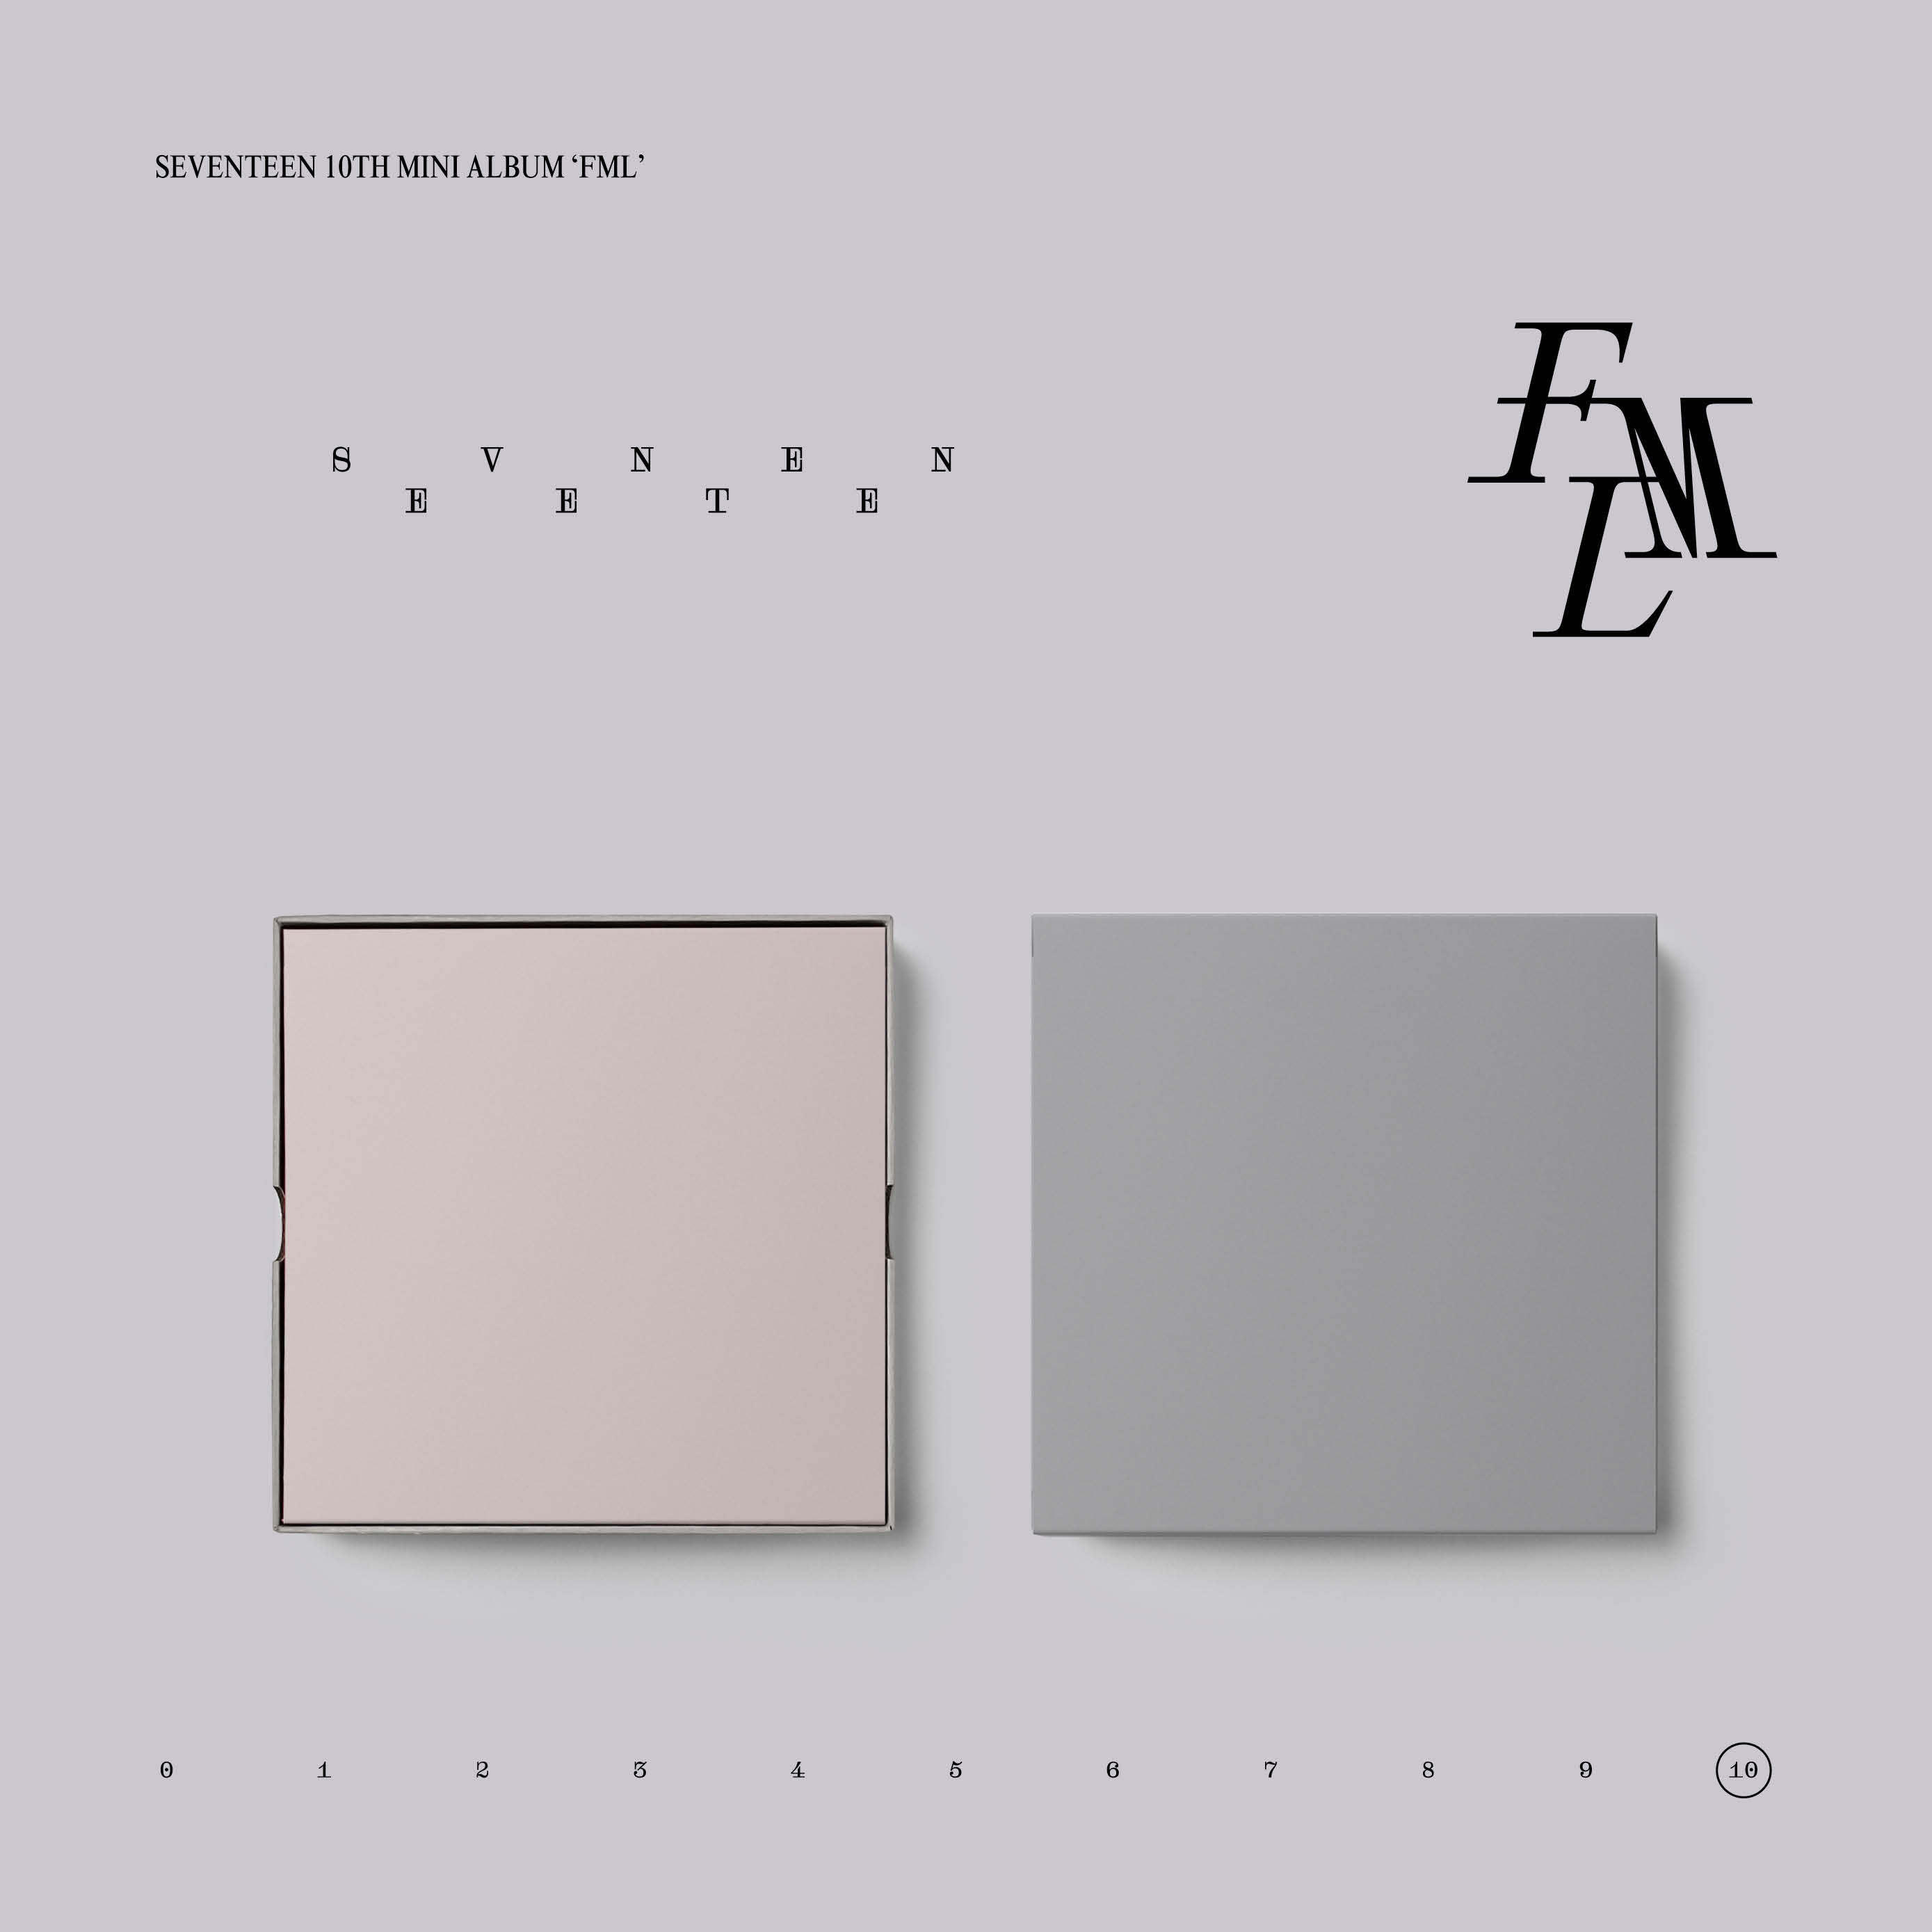 [拆卡专 第二批 截止至4.30早7点] SEVENTEEN - 10th Mini Album [FML] (CARAT Ver.)_尹净汉吧